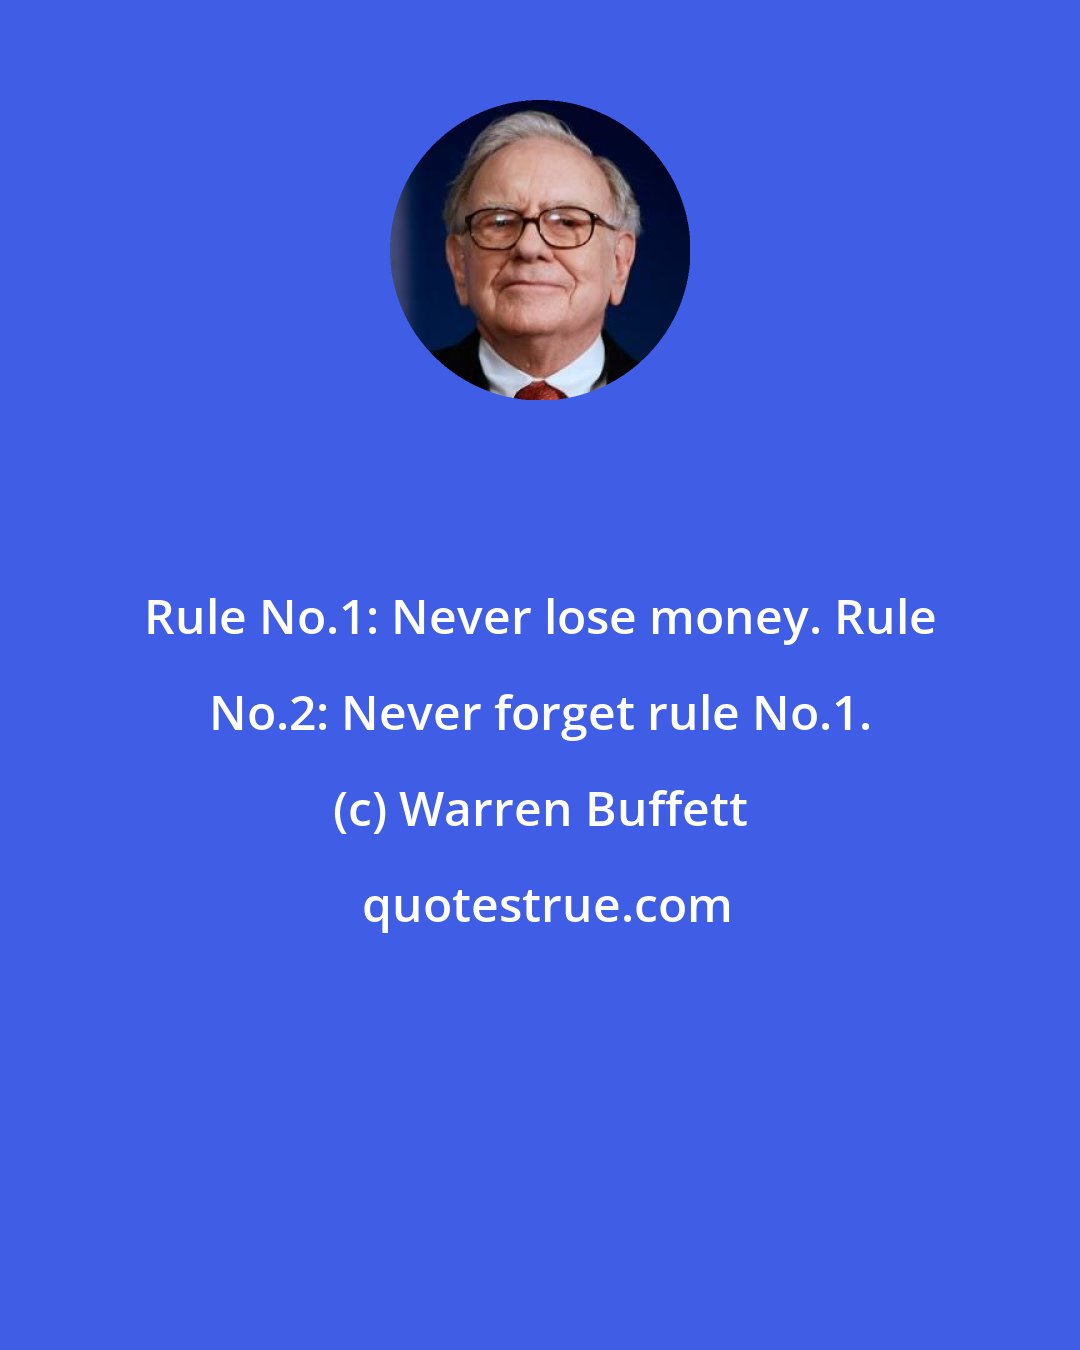 Warren Buffett: Rule No.1: Never lose money. Rule No.2: Never forget rule No.1.